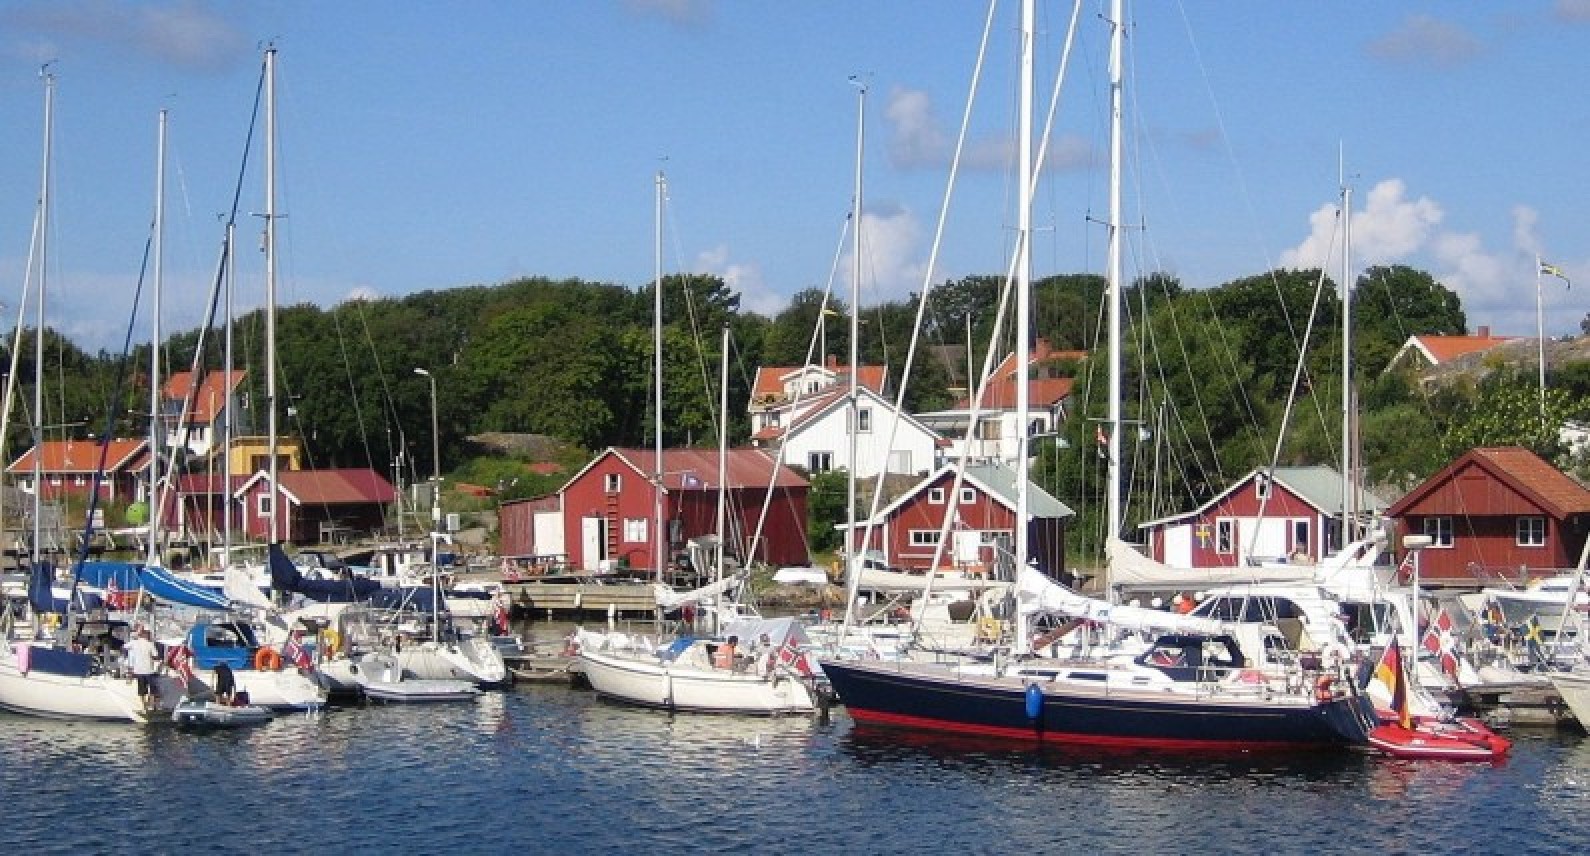 Szwedzi apelują do norweskiego rządu: otwórzcie się na handel transgraniczny